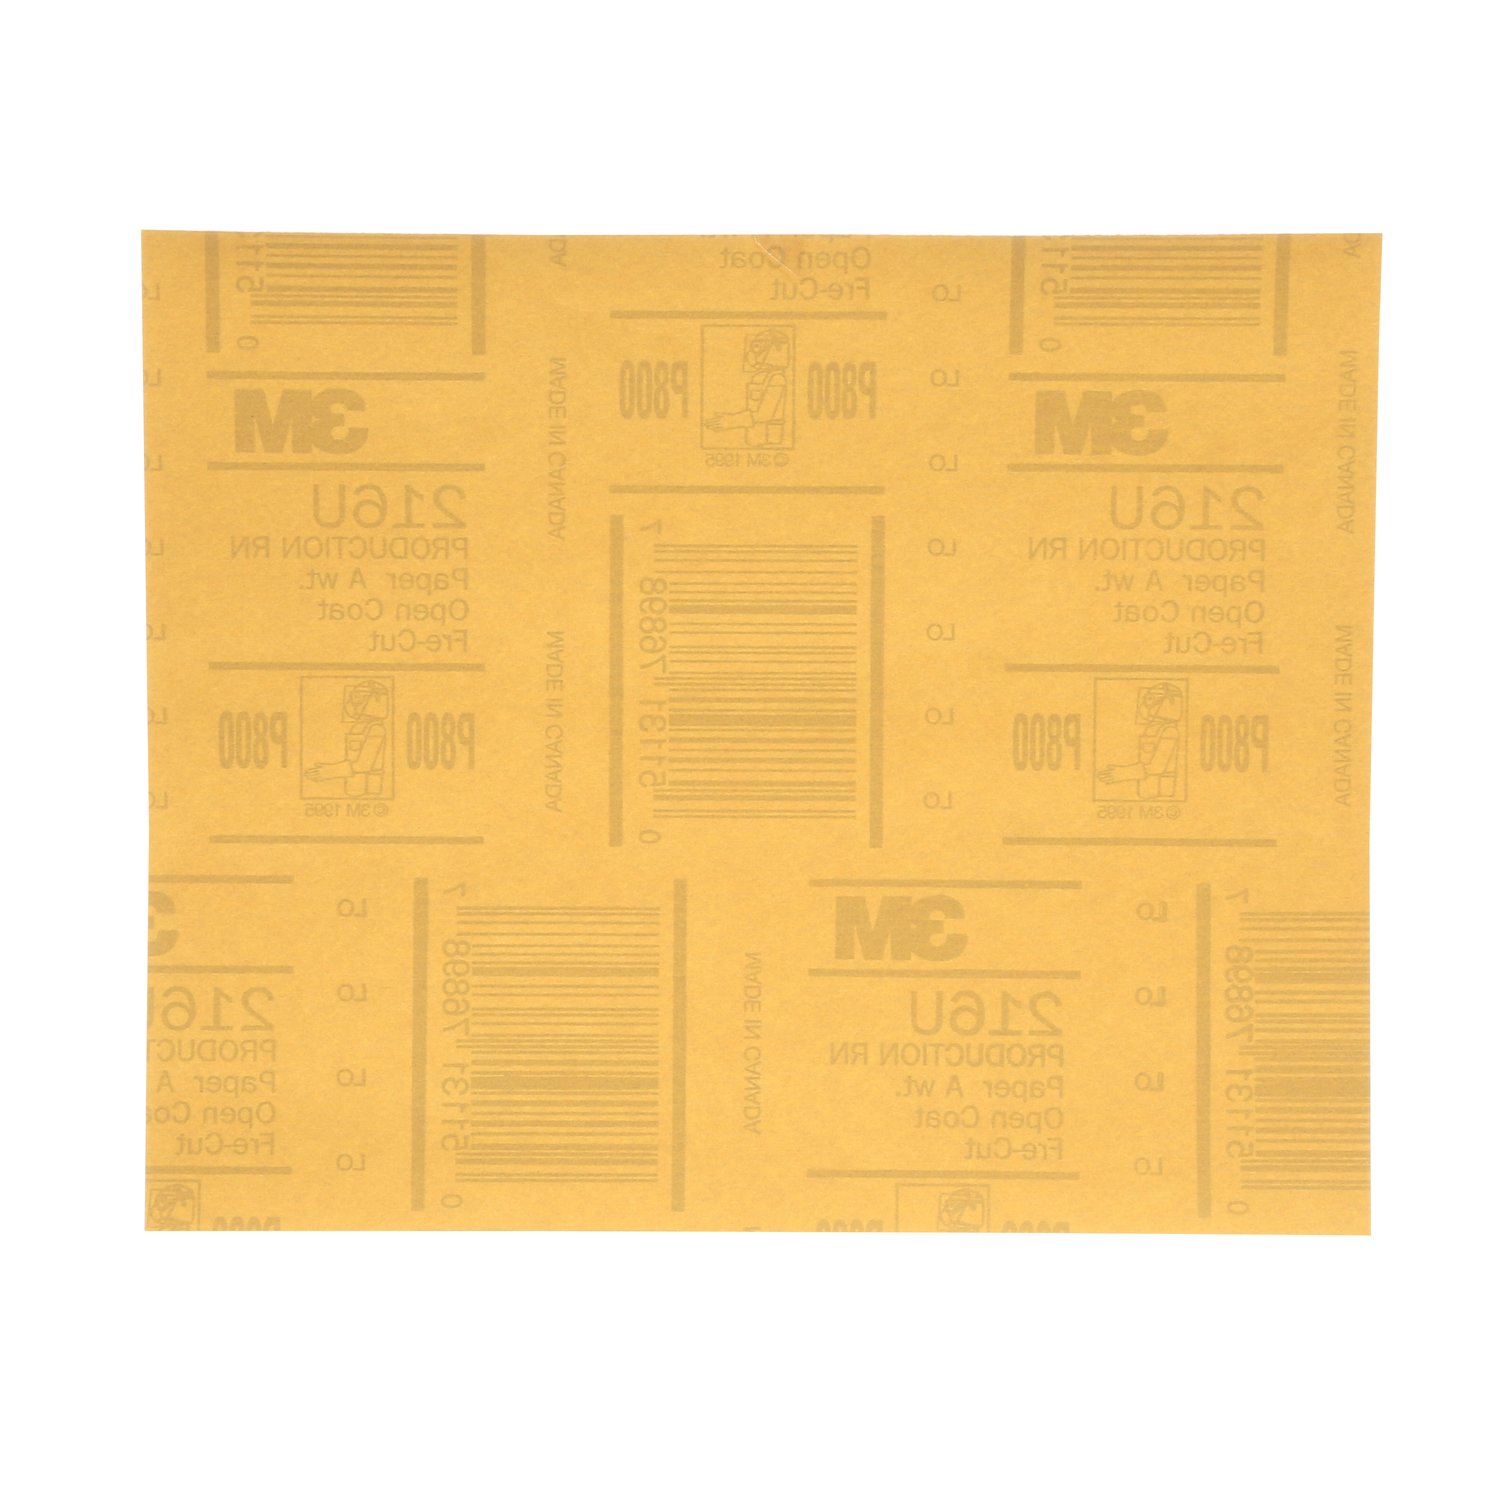 7000118275 - 3M Gold Abrasive Sheet, 02536, P800 grade, 9 in x 11 in, 50 sheets per
pack, 5 packs per case